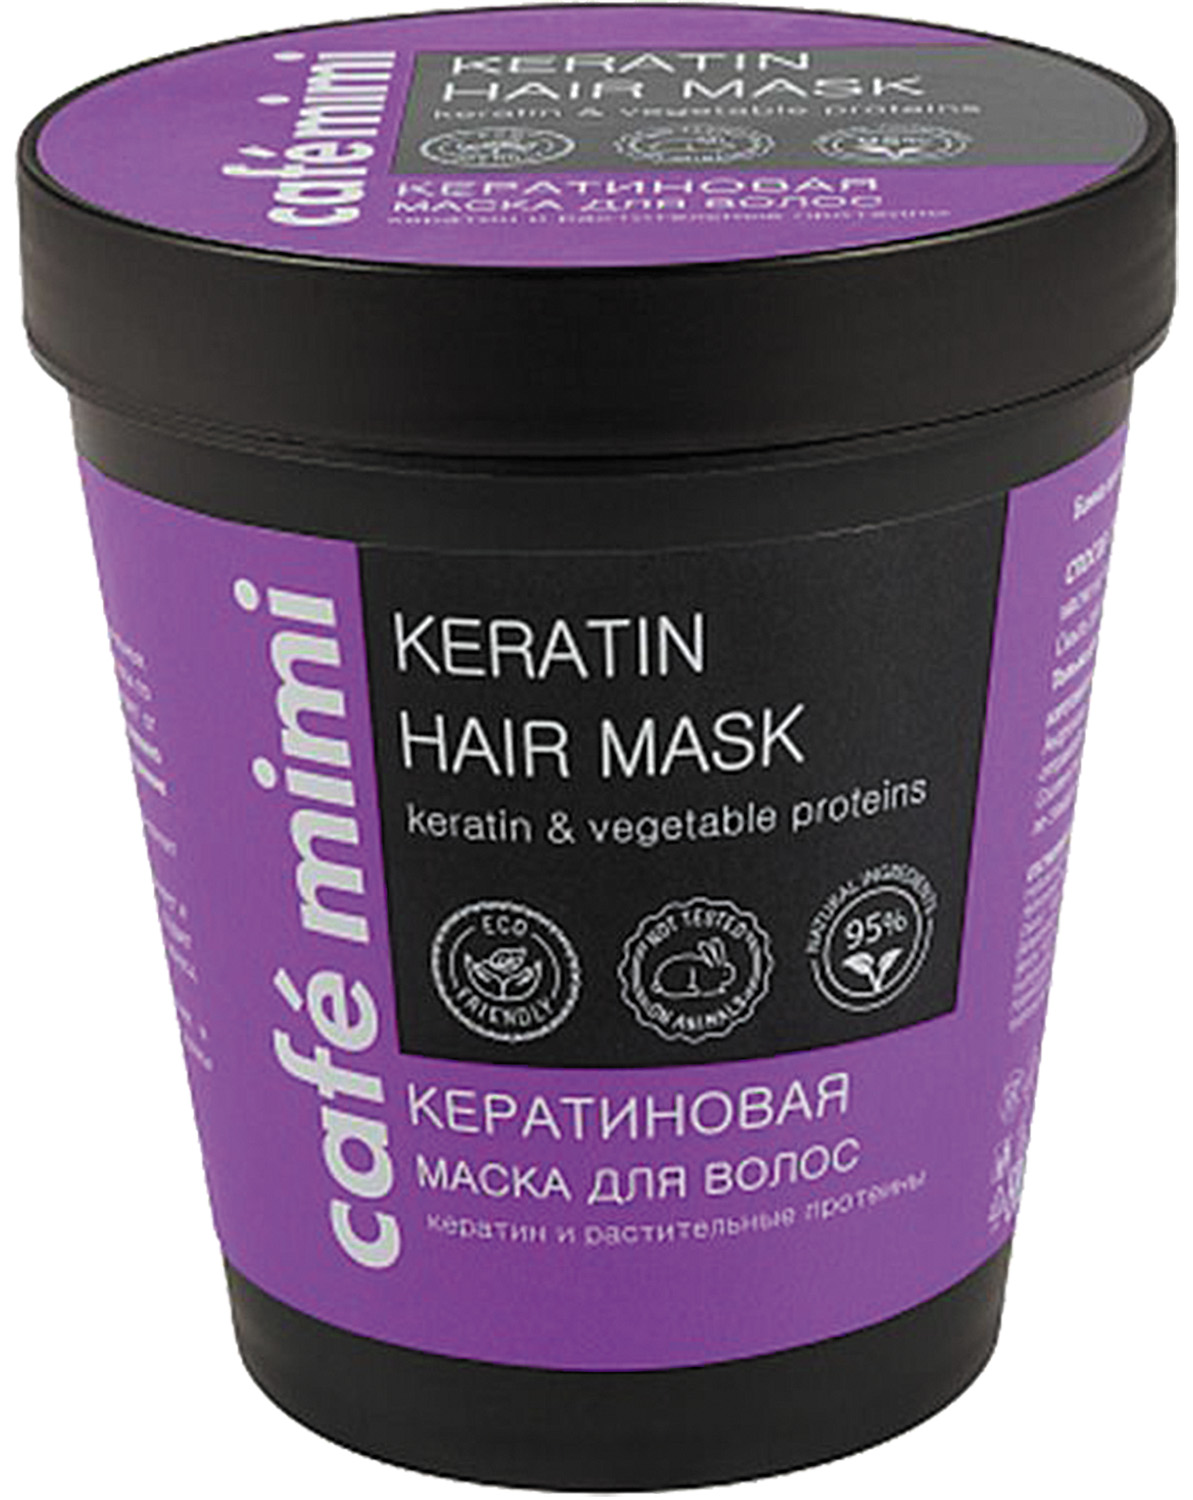 Маска для волос keratin отзывы. Cafe Mimi маска для волос кератиновая 220 мл. Маска для волос "Cafemimi" кератиновая, 220 мл. Кафе Мими кератин маска. Cafe Mimi маска для волос с протеинами 110мл.